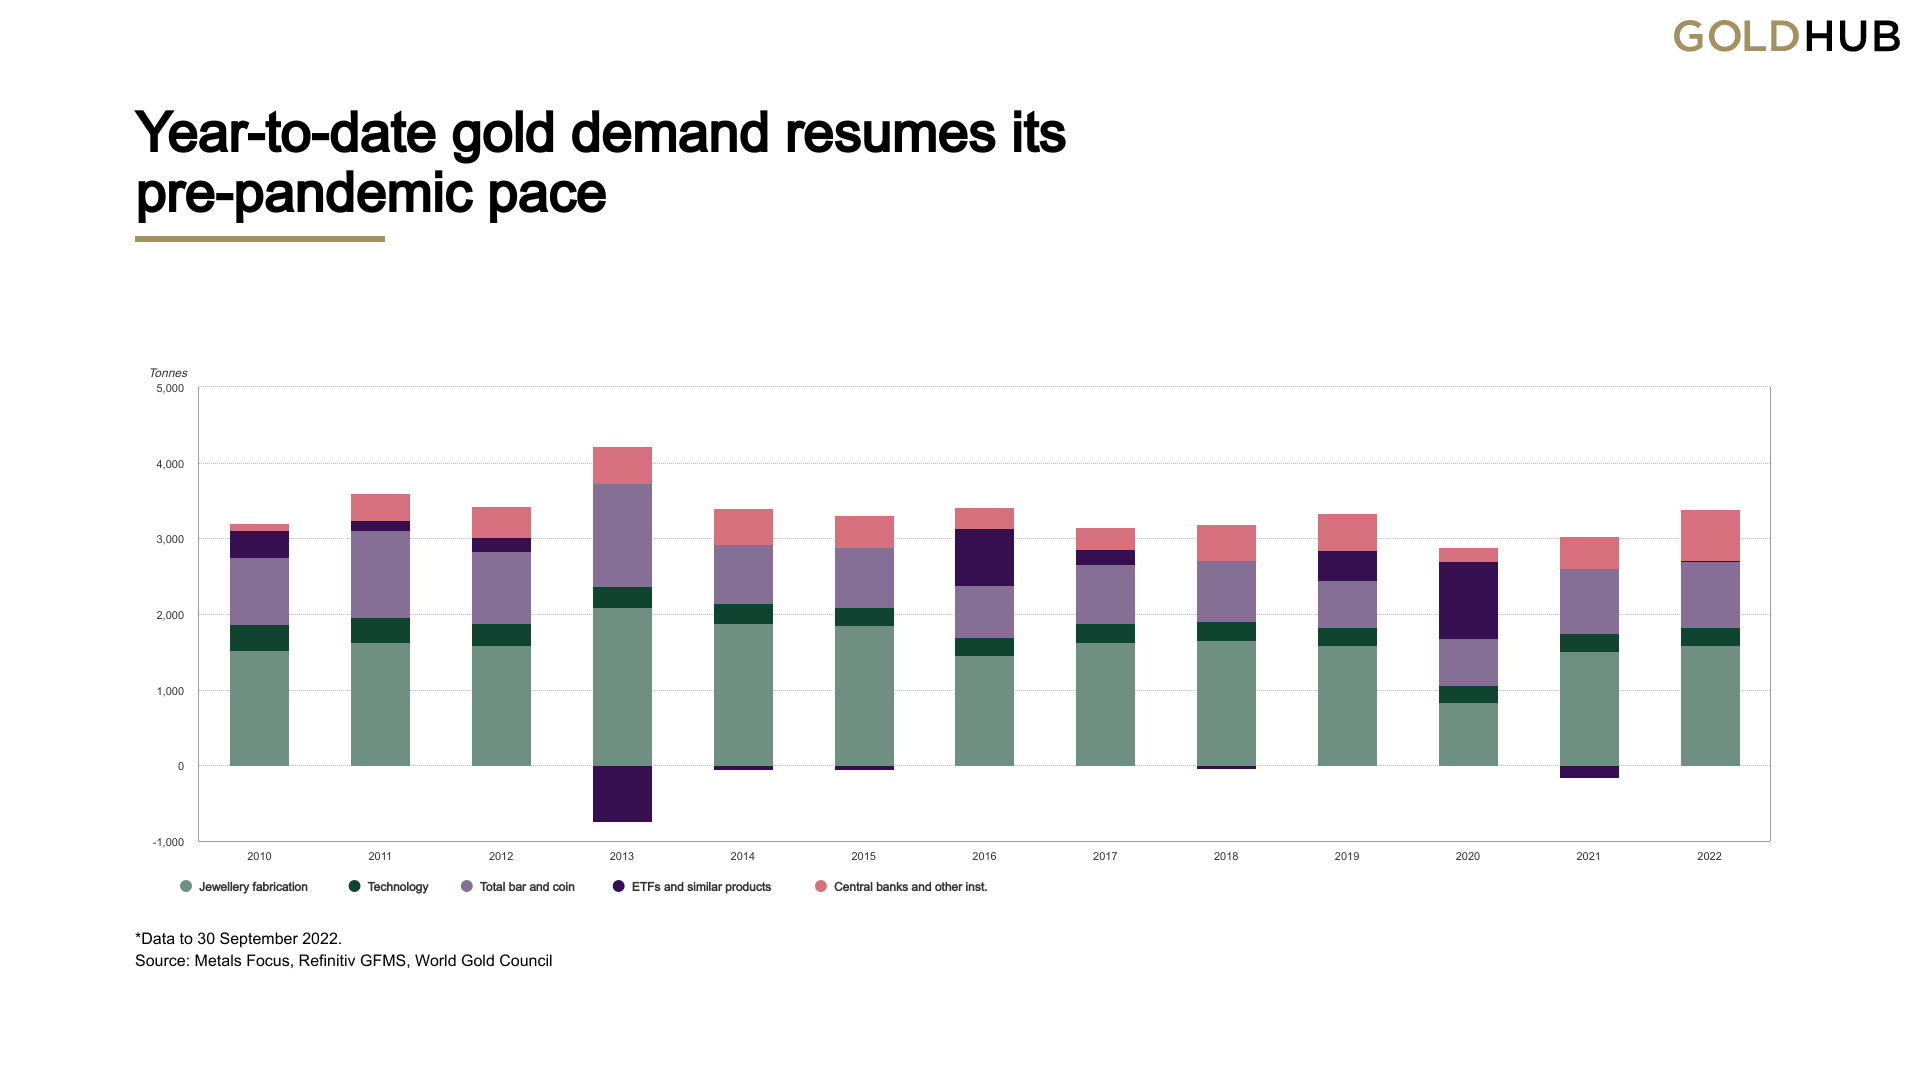 Las compras de oro del banco central este año alcanzan un máximo trimestral histórico en el tercer trimestre, 400 toneladas compradas es la 'mayor cantidad registrada'